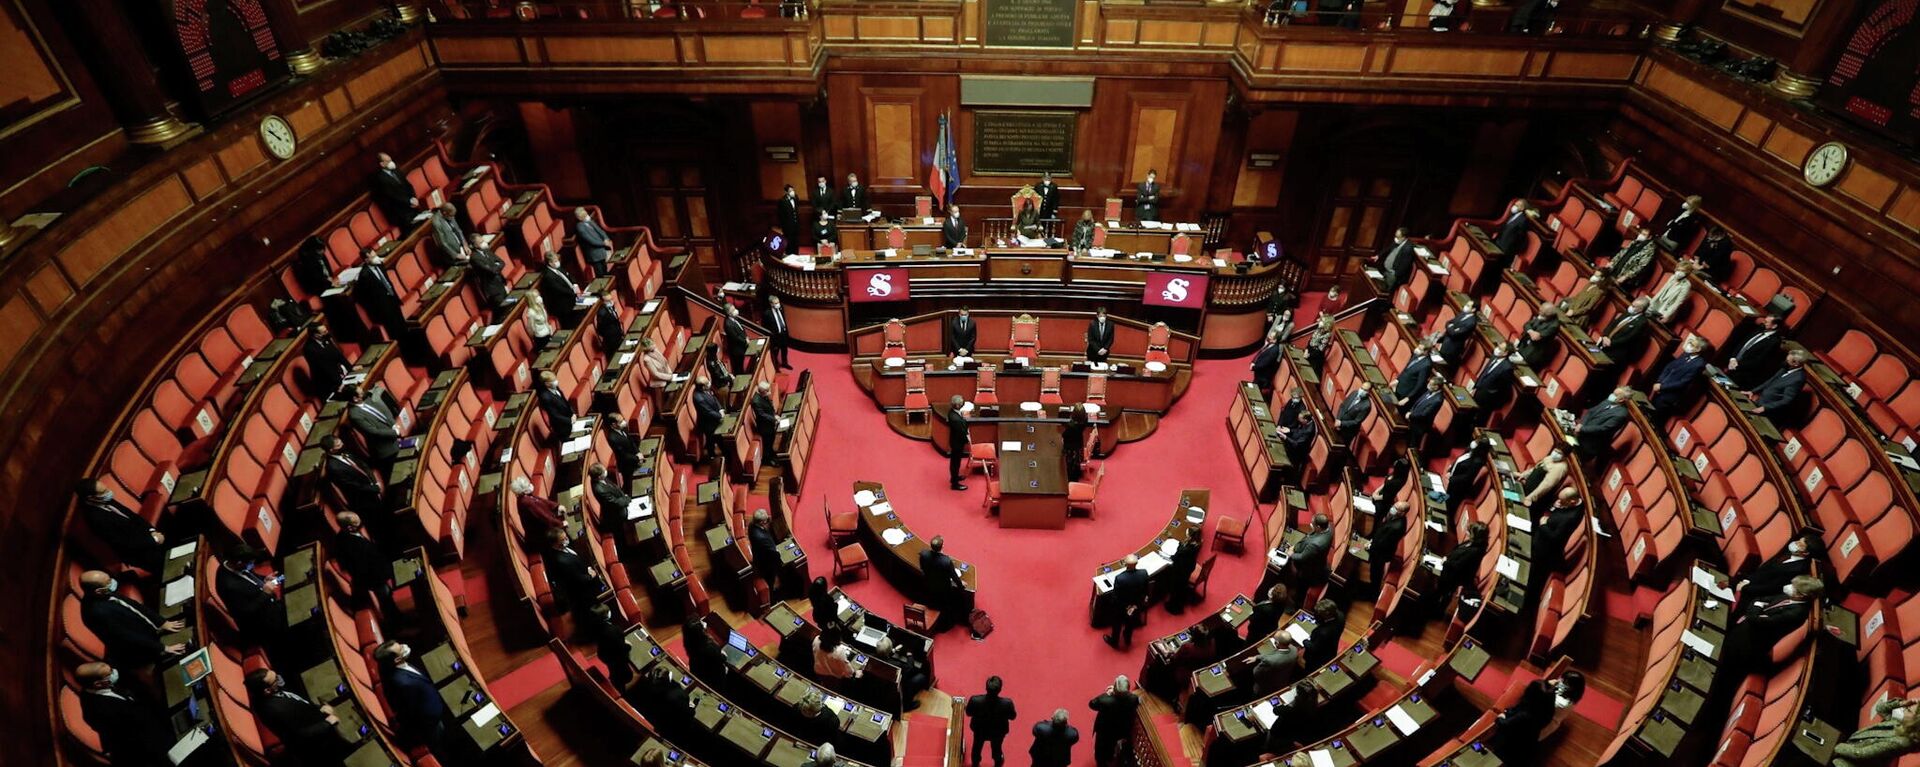 El Parlamento italiano guardando un minuto de silencio en memoria del embajador Luca Attanasio - Sputnik Mundo, 1920, 24.02.2021